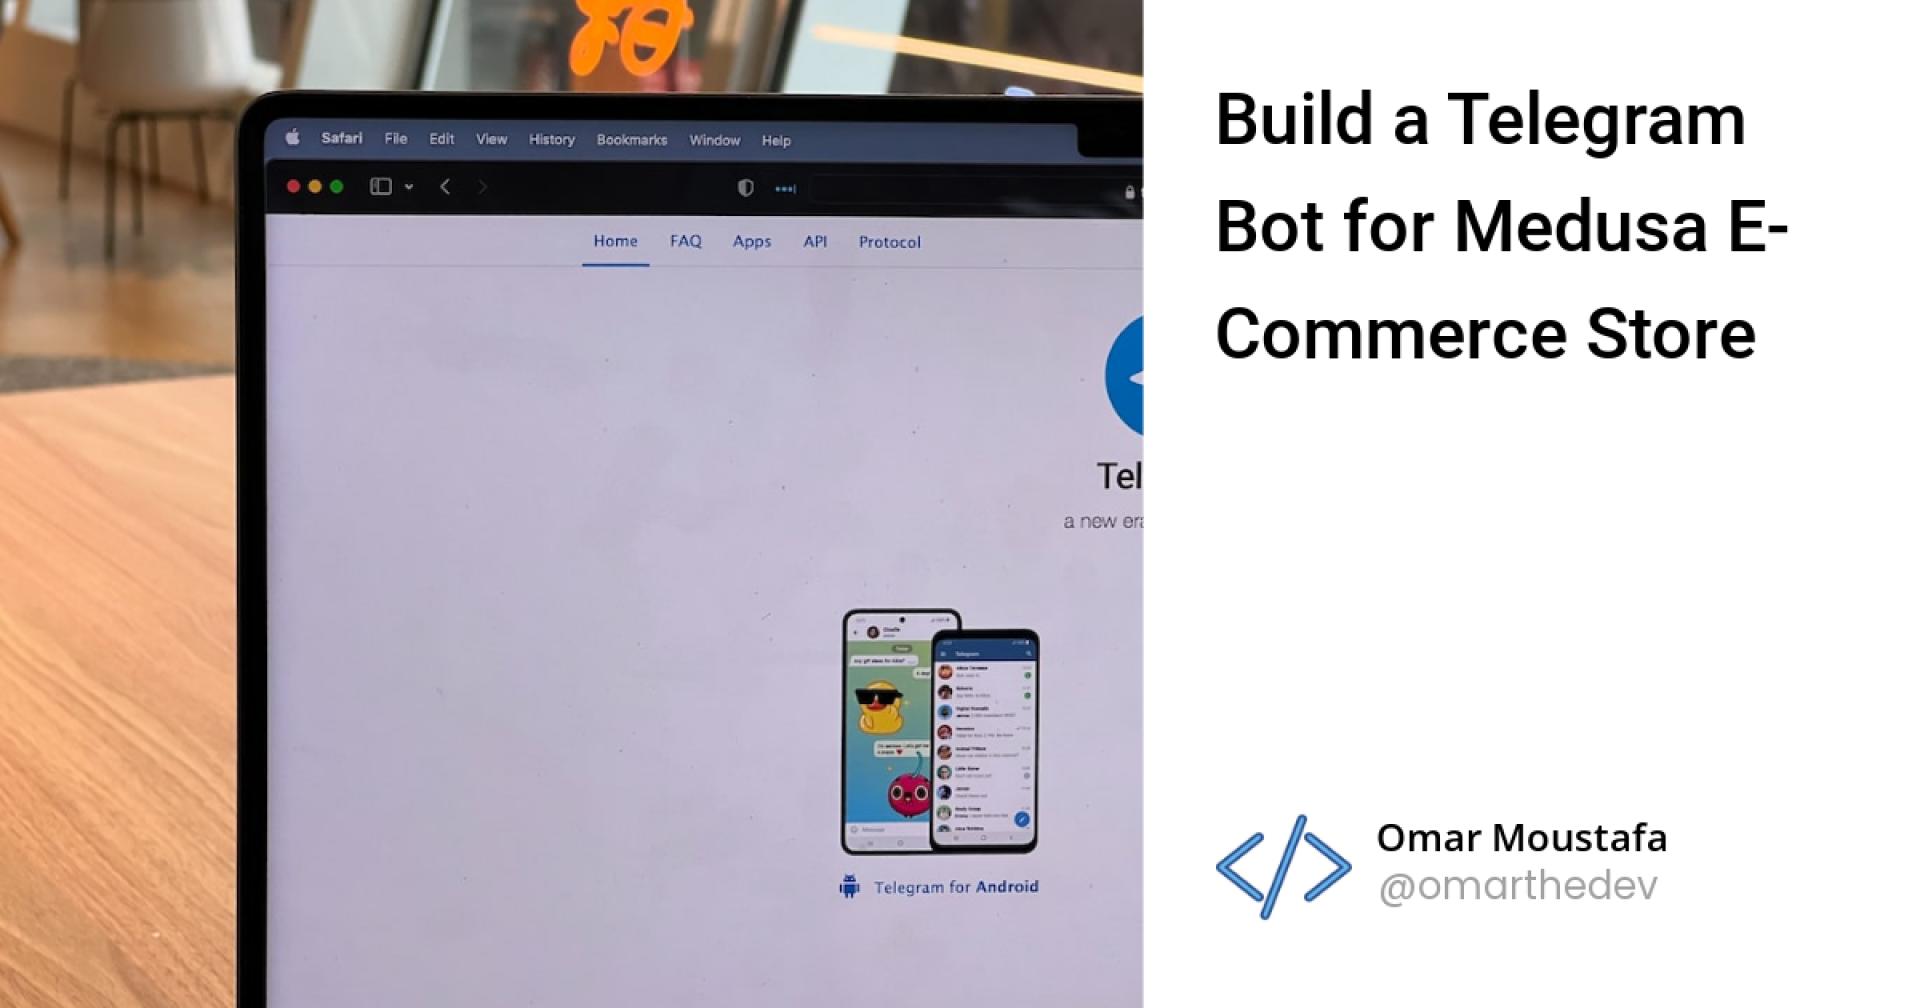 Build a Telegram Bot for Medusa E-Commerce Store